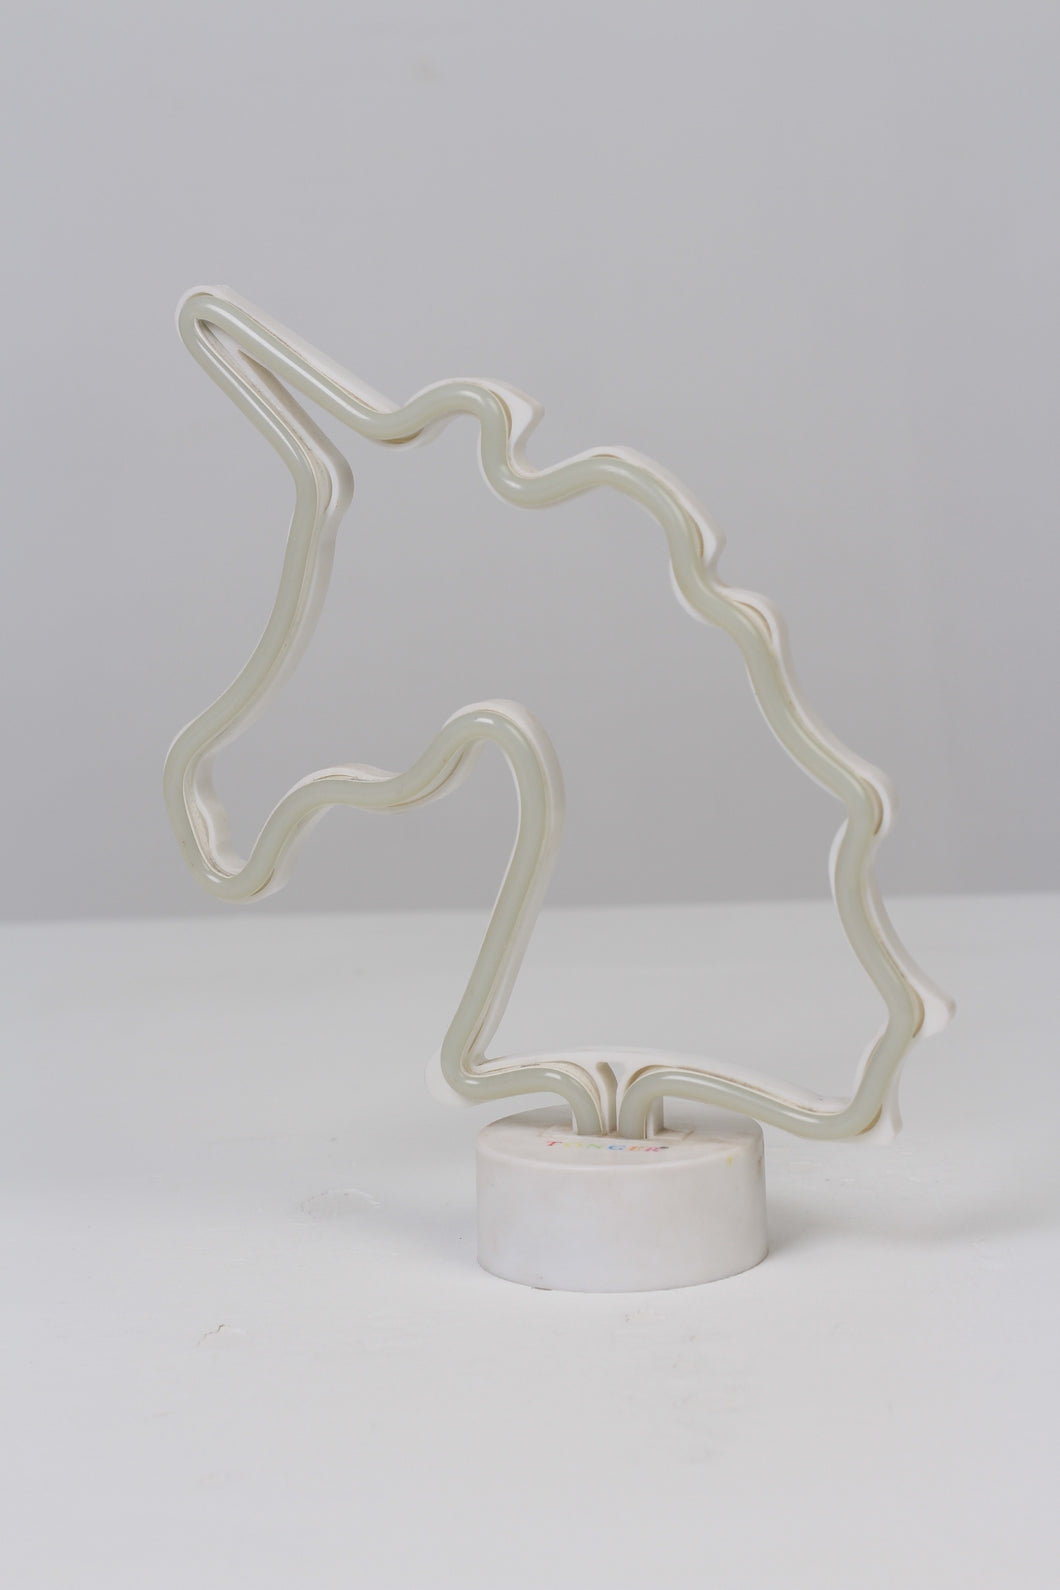 White Unicorn Decoration Piece with Tube Led Light 9